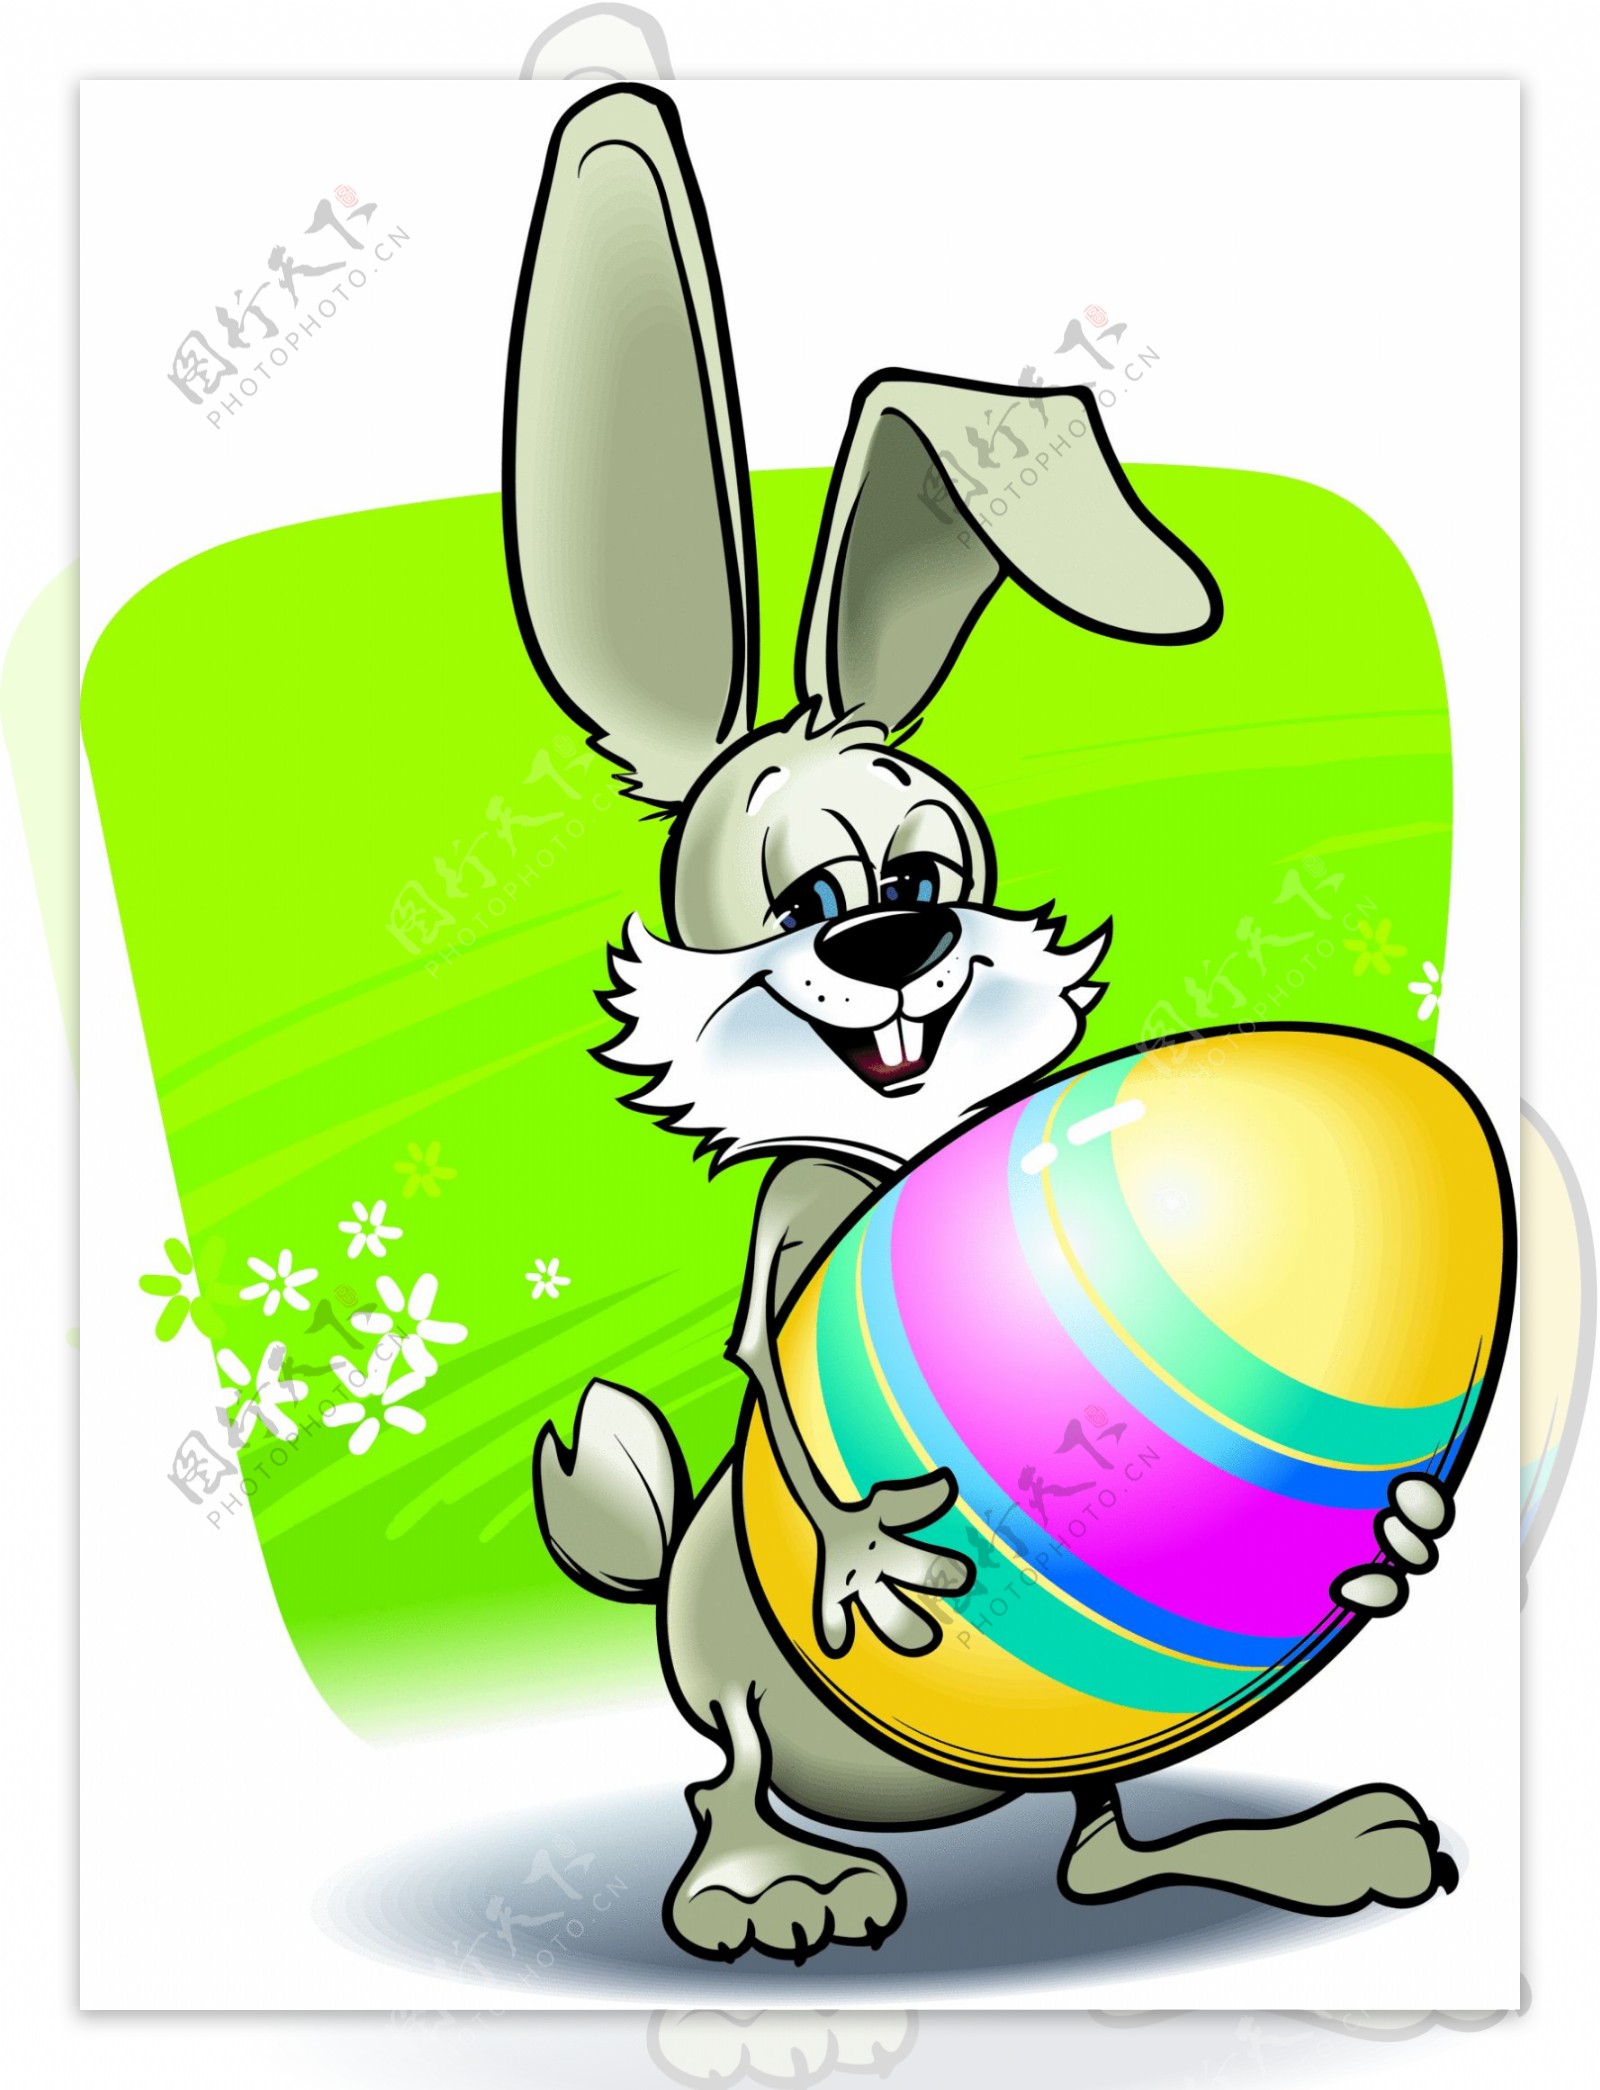 小兔子卡通圖片 – Cpanly